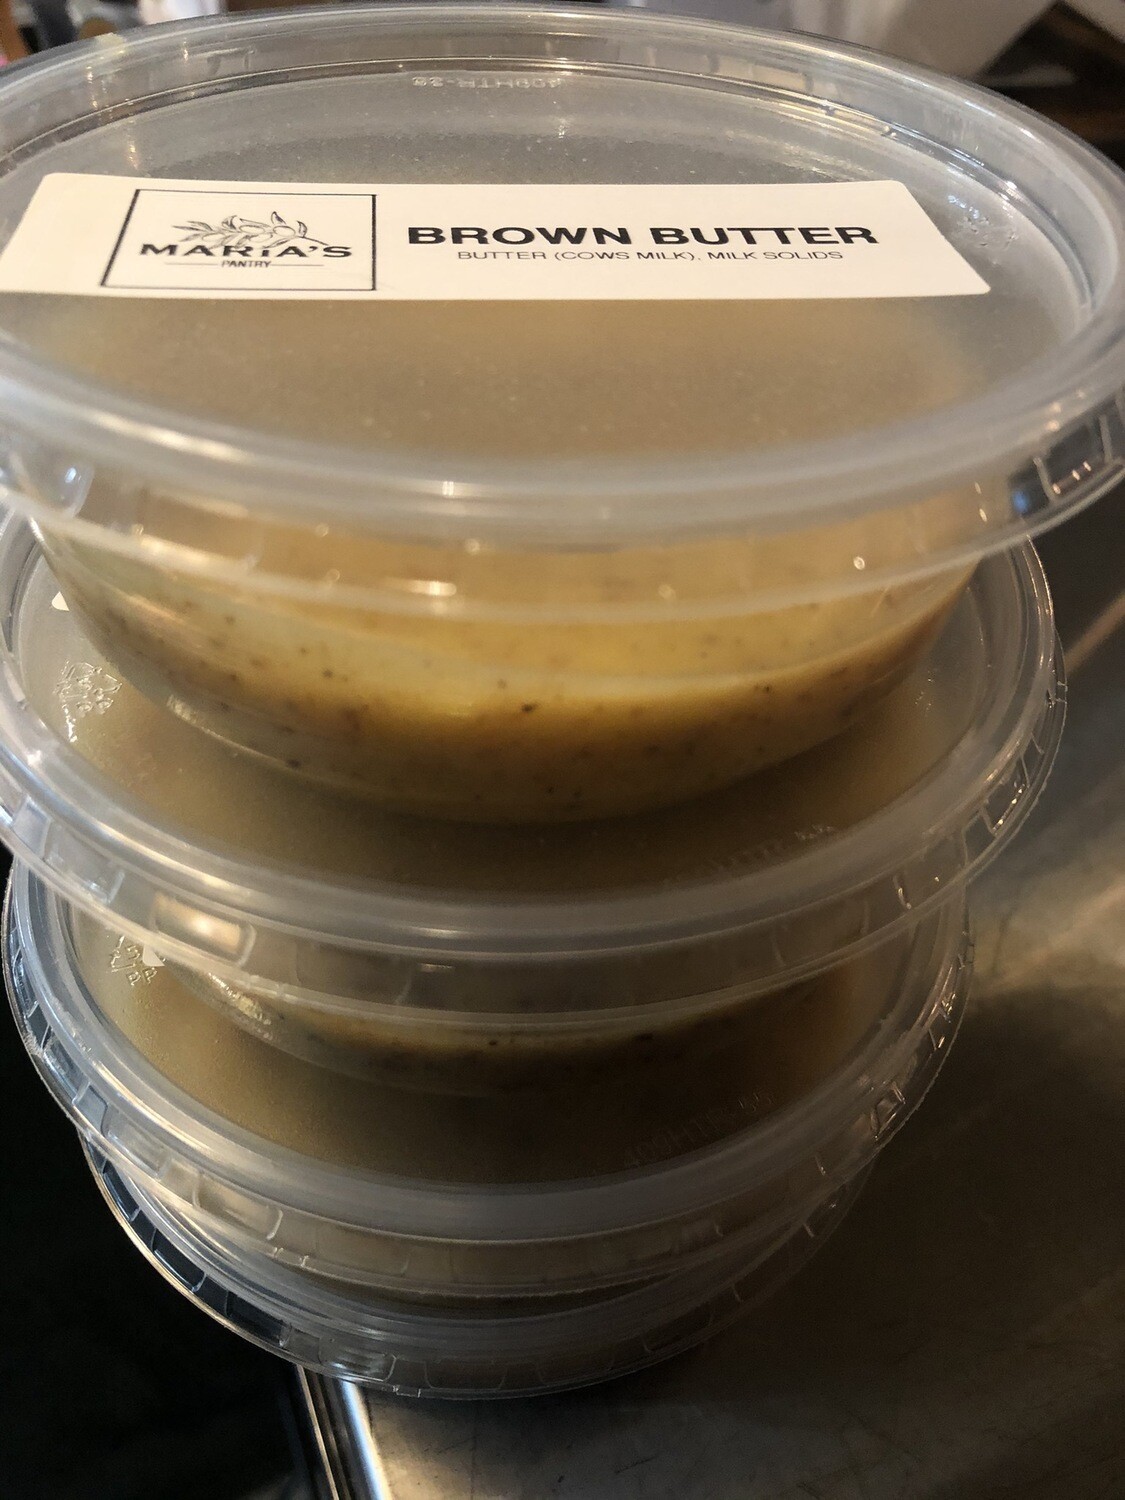 Brown Butter